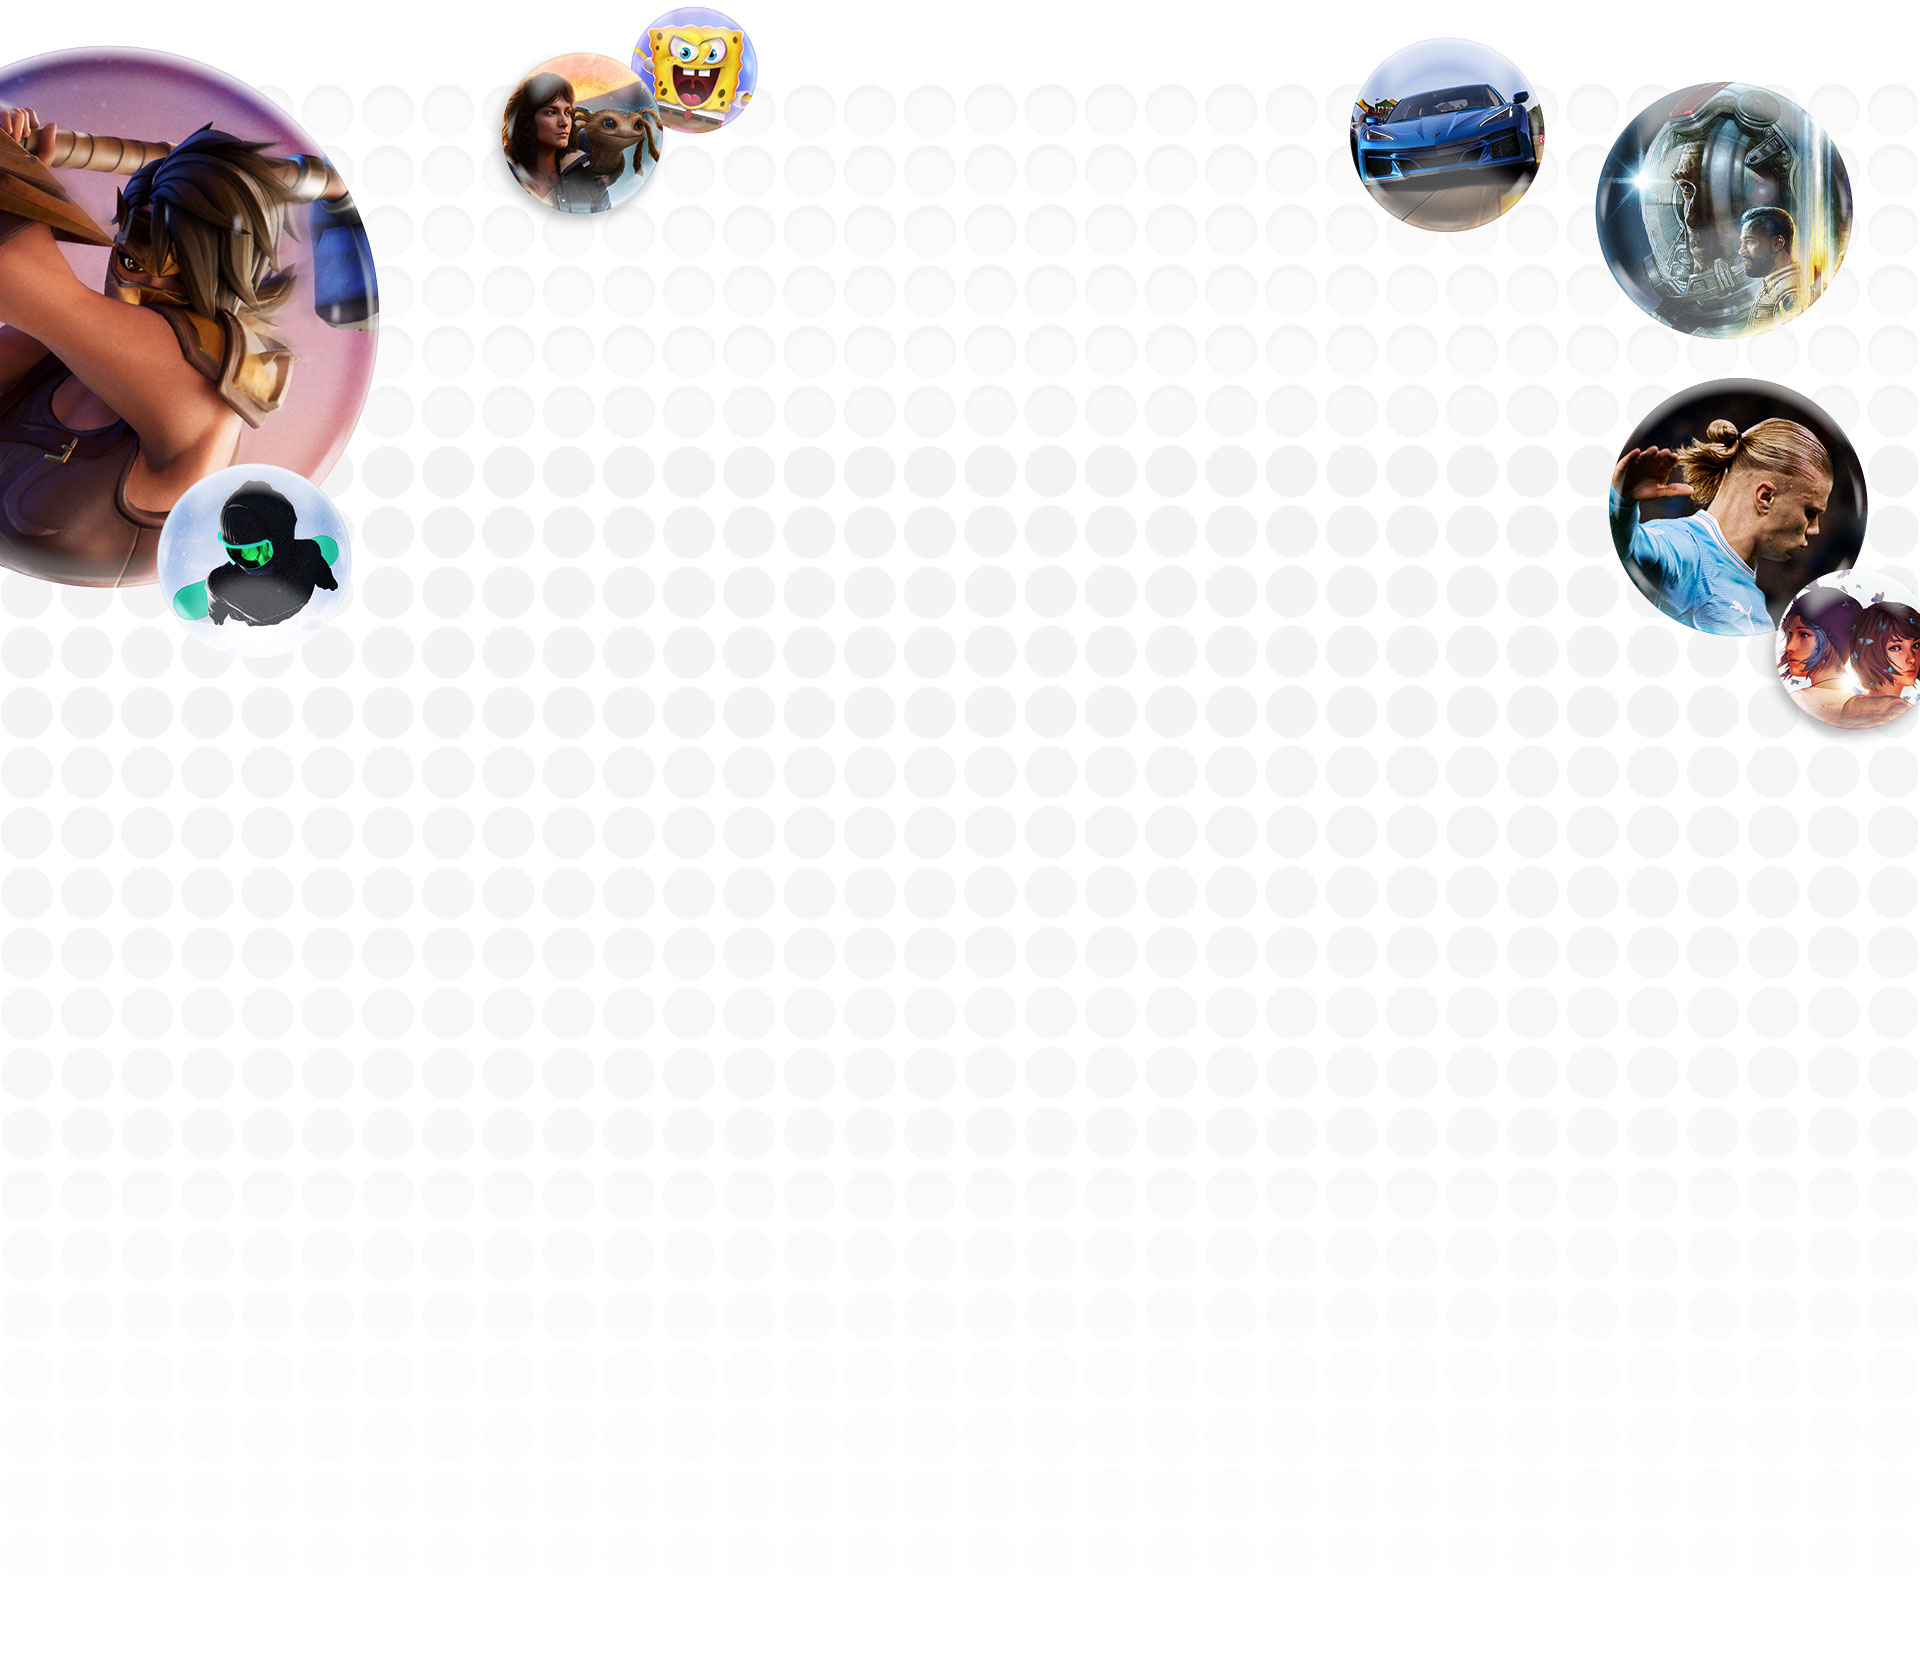 Personajes de los juegos de Xbox Fortnite, Star Wars, EA FC24, GAMENAME y Forza Motorsport flotando en burbujas